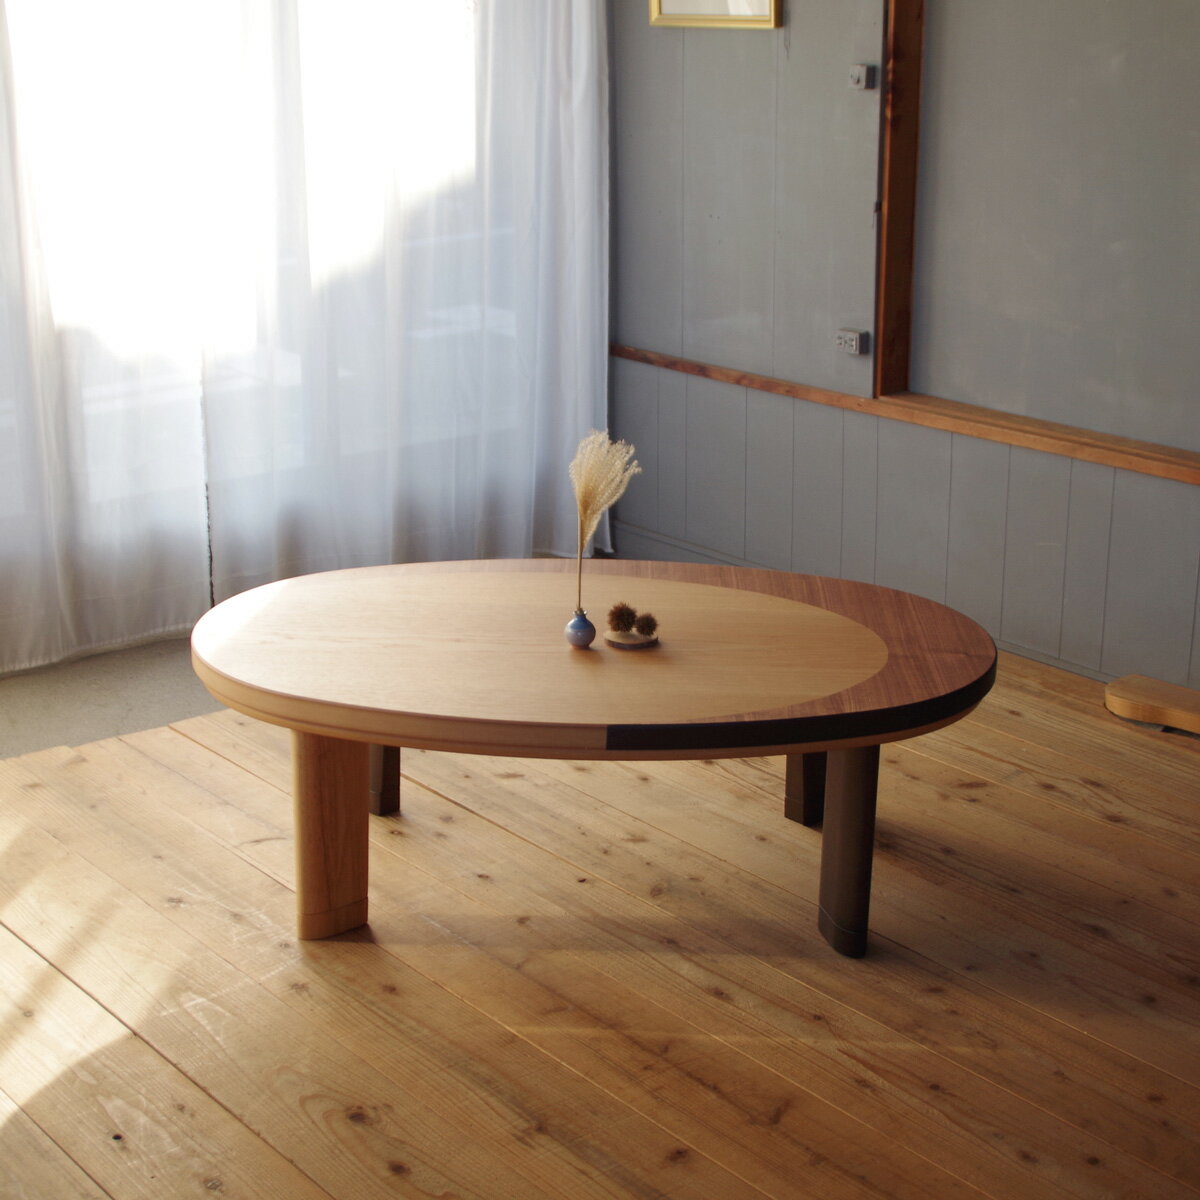 MOON LIGHTこたつ 楕円形 テーブル 150×90ナラ / ウォールナット|北欧|和風|モダン|シンプル|デザイン||おしゃれ|かわいい||円卓|座卓|ちゃぶ台||ローテーブル|センターテーブル||日本製|国産|